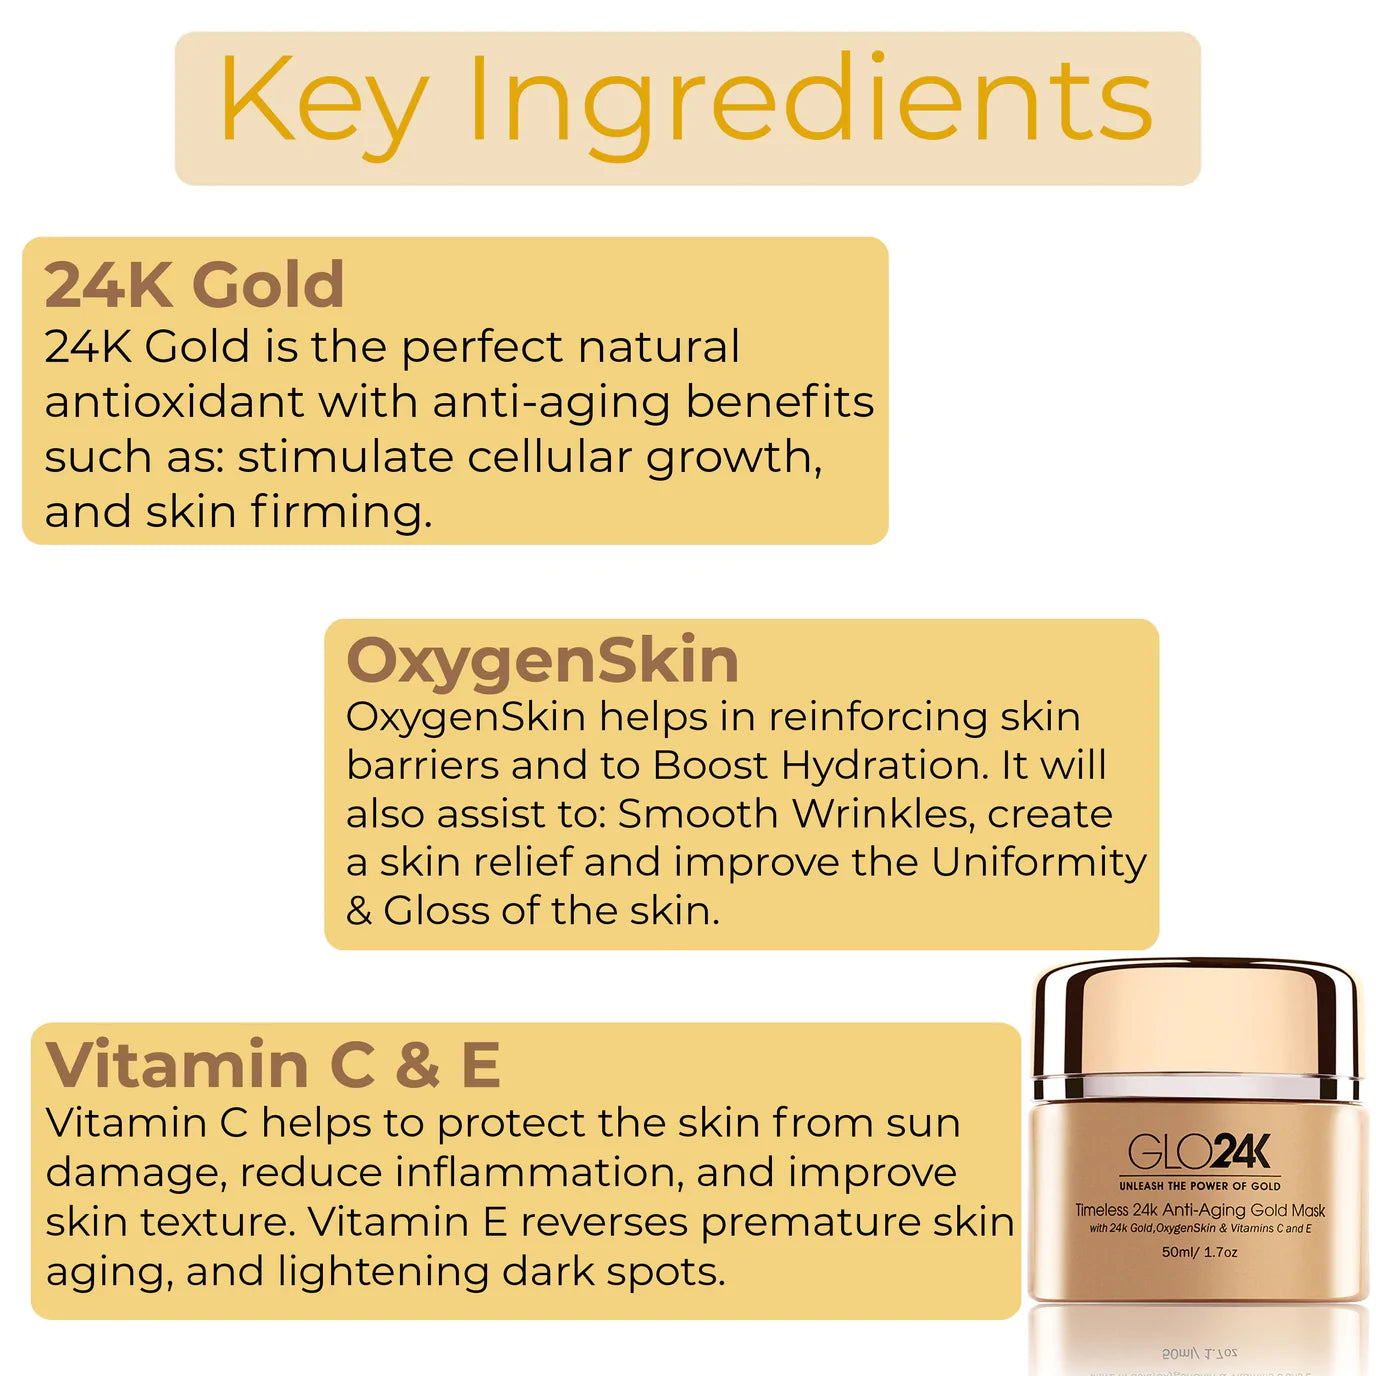 Key ingredients of GLO24K Timeless 24k Anti-Ageing Gold Mask